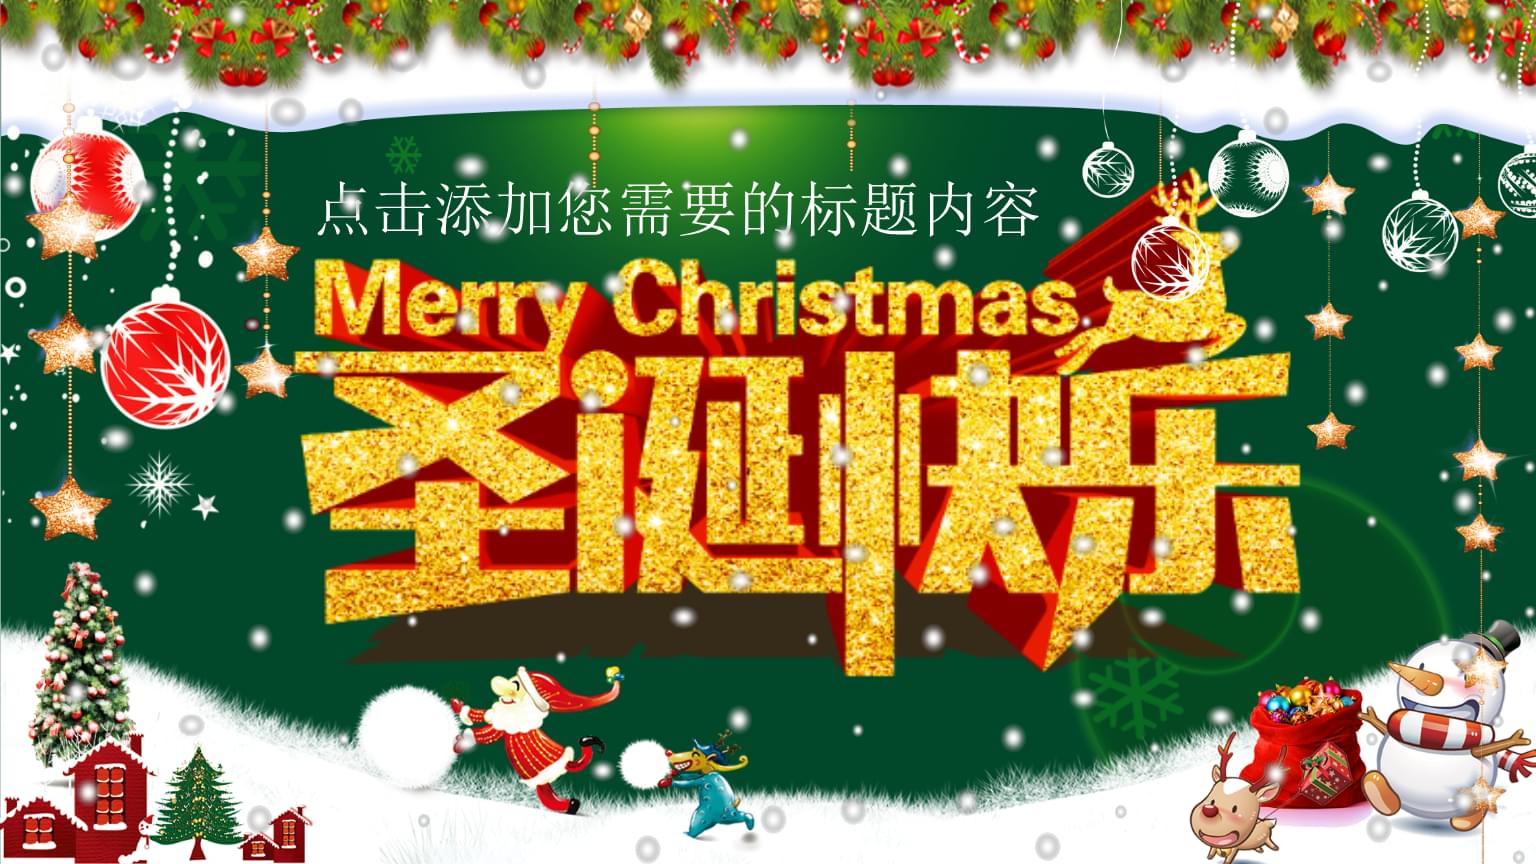 圣诞放假节香港放假吗_香港圣诞节放假_圣诞放假节香港放假几天